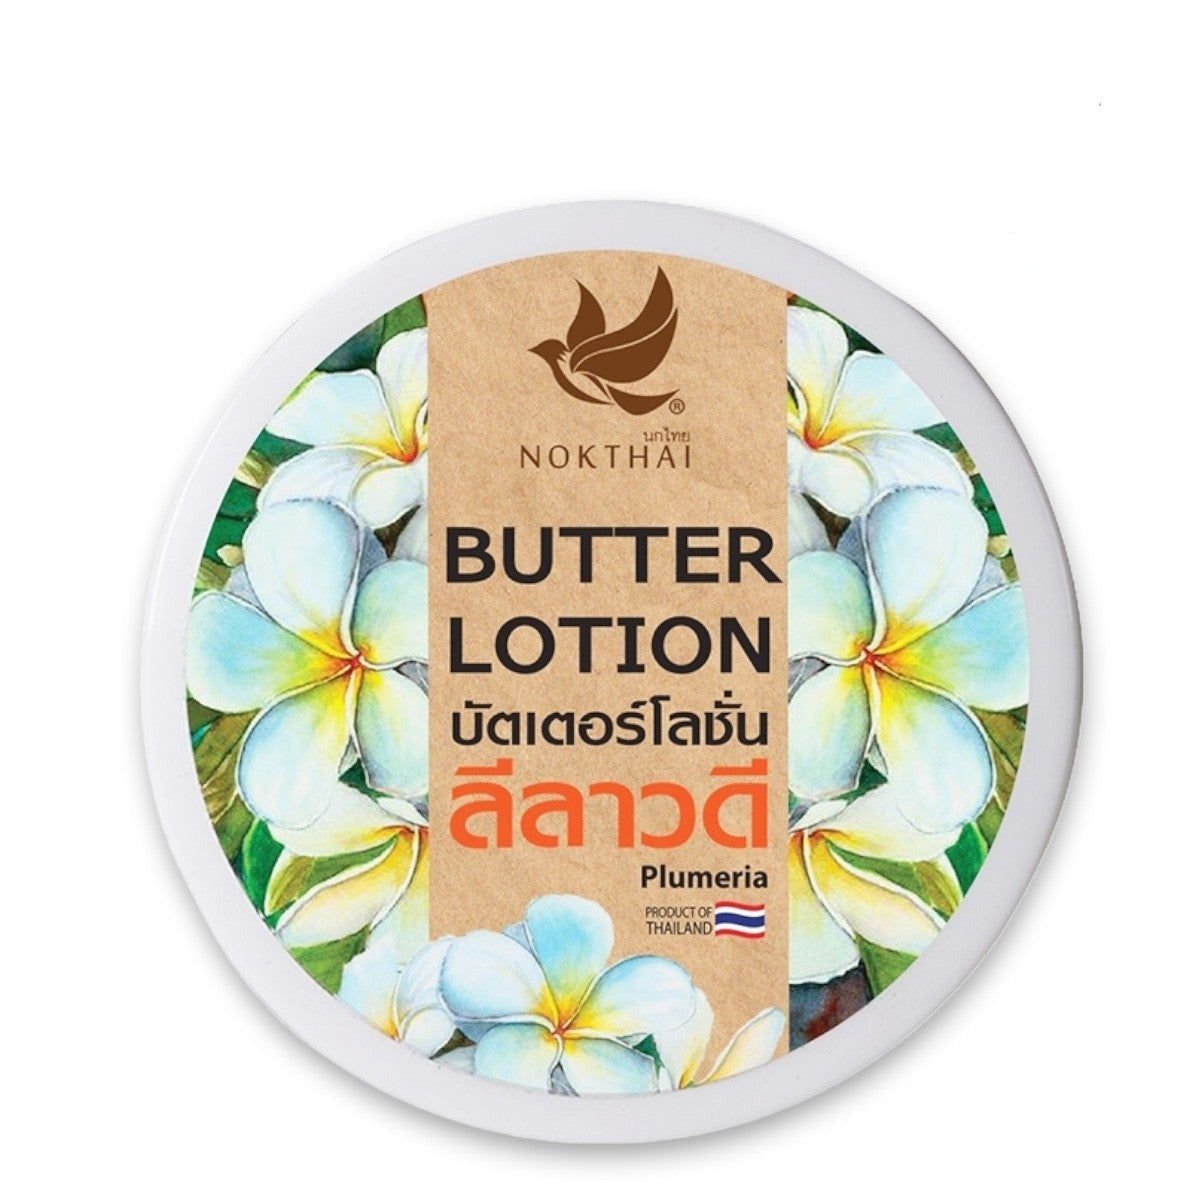 Nok Thai Body Butter Lotion, 100g